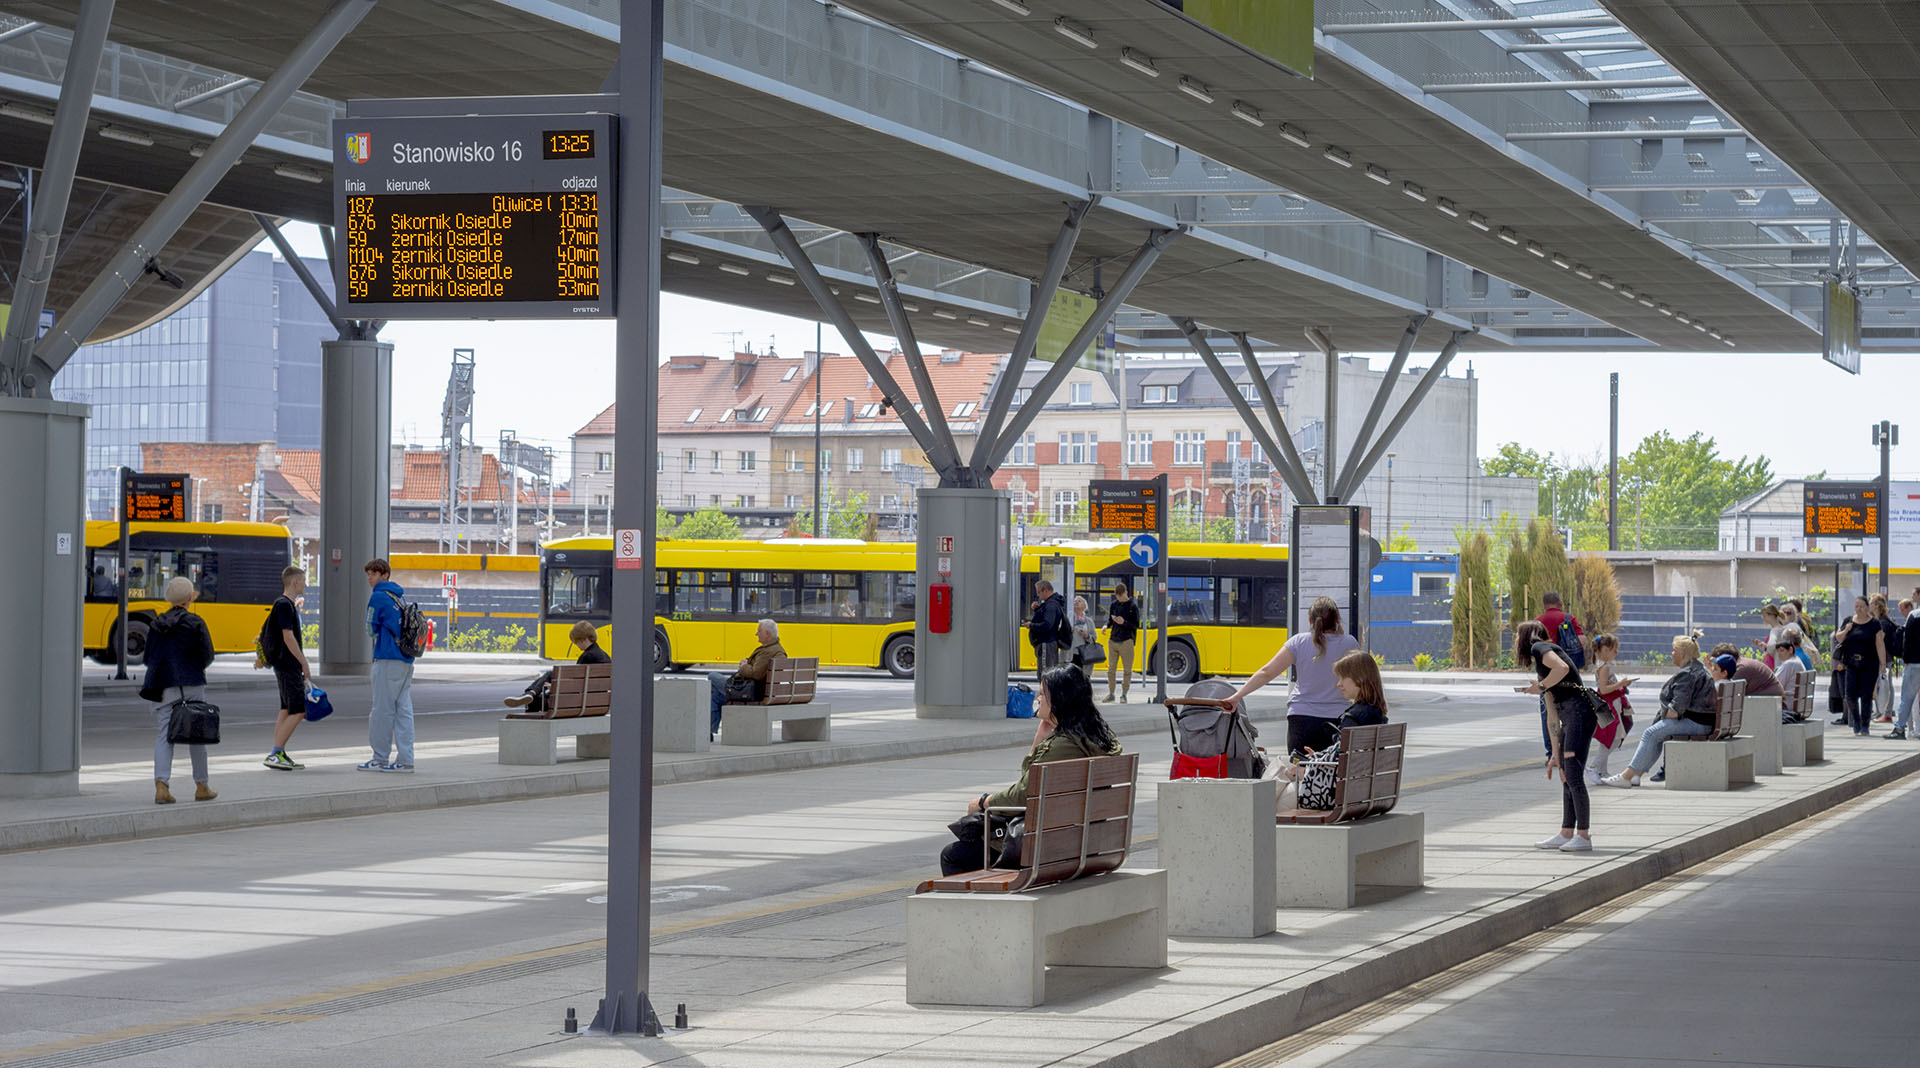 Gliwice Transfer Center - amber LED real-time passenger information boards. Centrum przesiadkowe w Gliwicach z wyświetlaczami i tablicami dynamicznej informacji pasażerskiej oraz systemem dynamicznej informacji pasażerskiej lokalnej i metropolitalnej, kolejowej i autobusowej międzynarodowej.